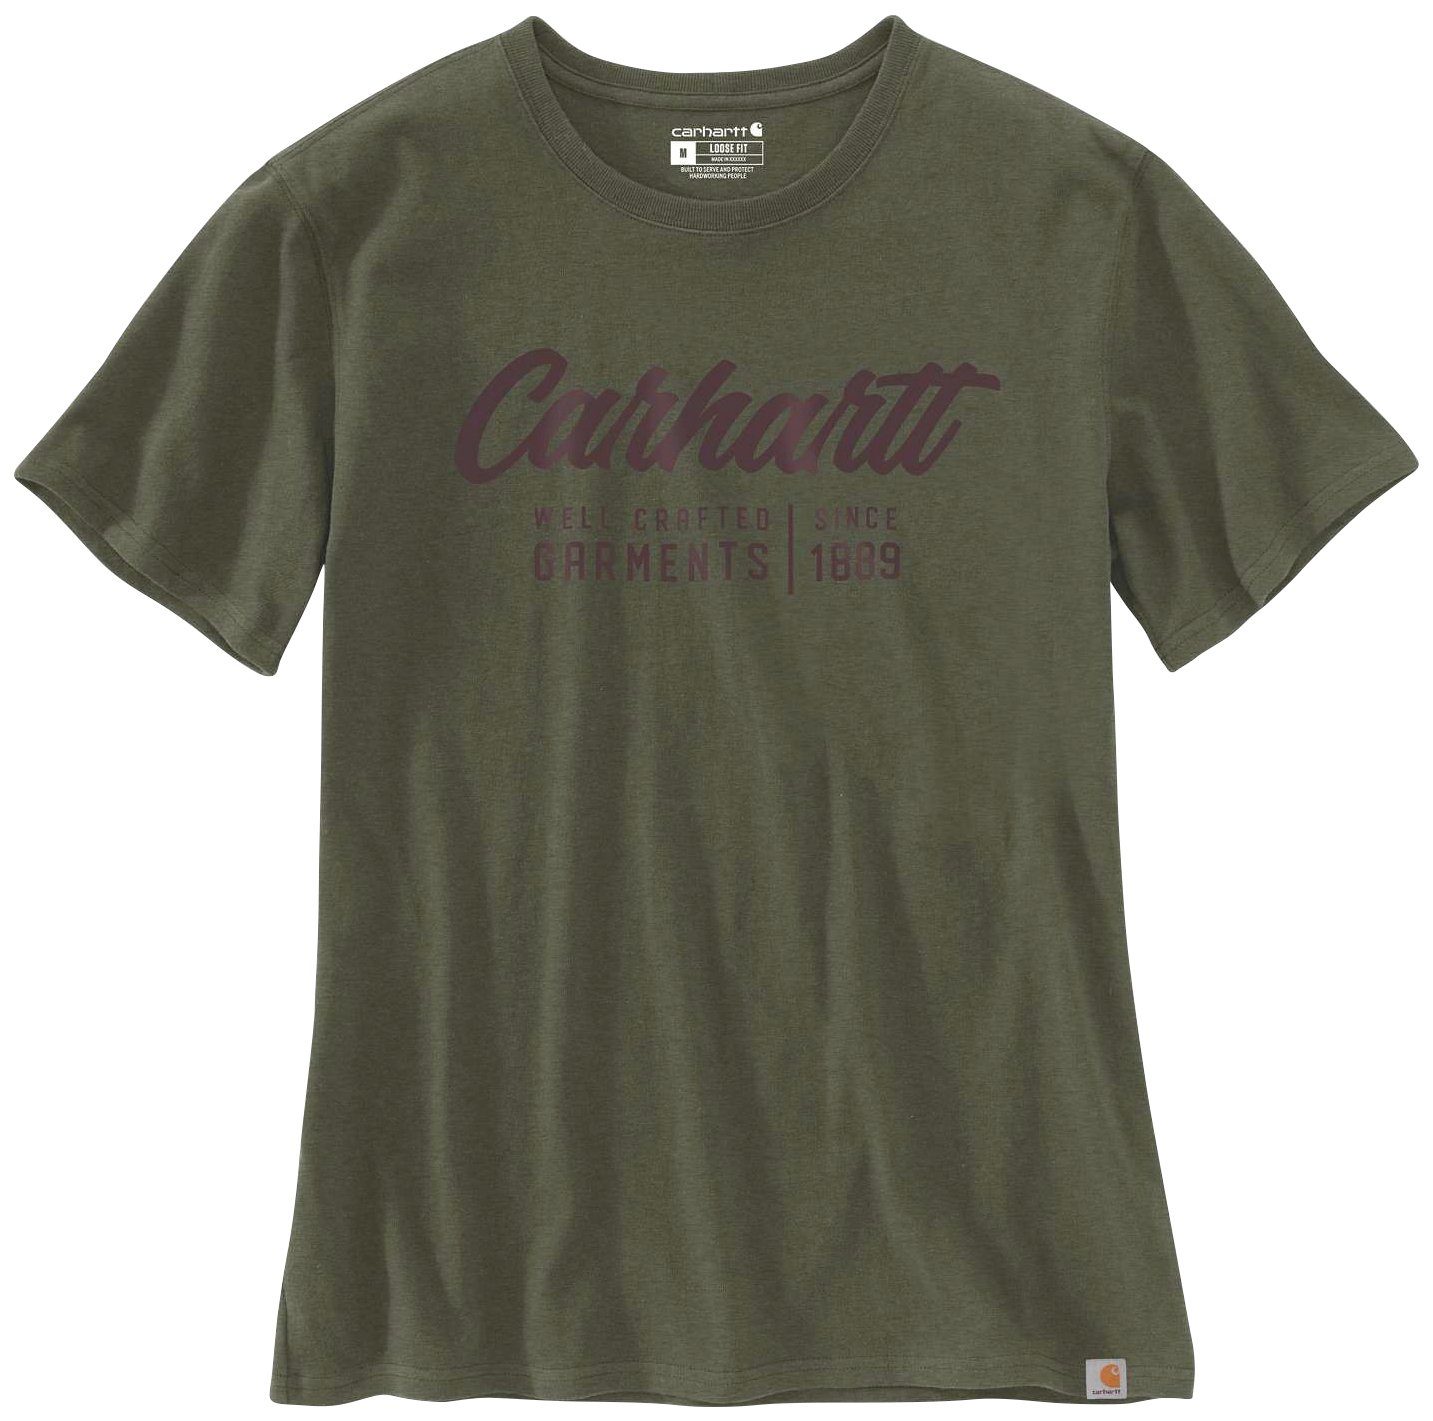 carhartt t shirt fit